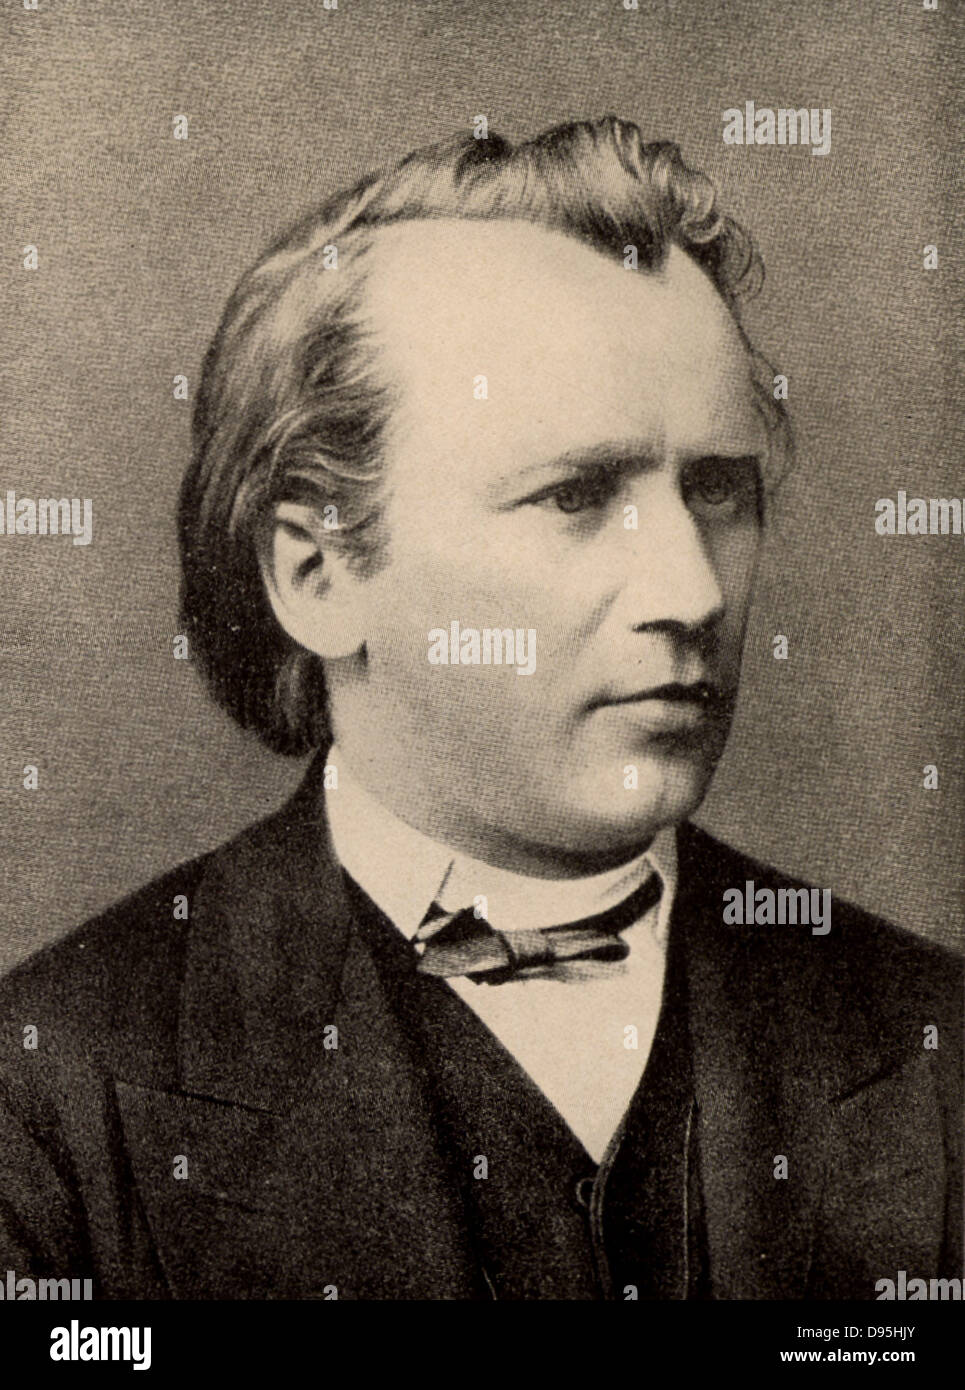 Johannes Brahms (1833-1897) German composer, in 1875.  From a photograph. Legend reads 'Johannes Brahms zurfreundlichen Erinnerung an Klara (und Fritz) Simrock' (In friendly remembrance of Klara (and Fritz) Simrock). Stock Photo